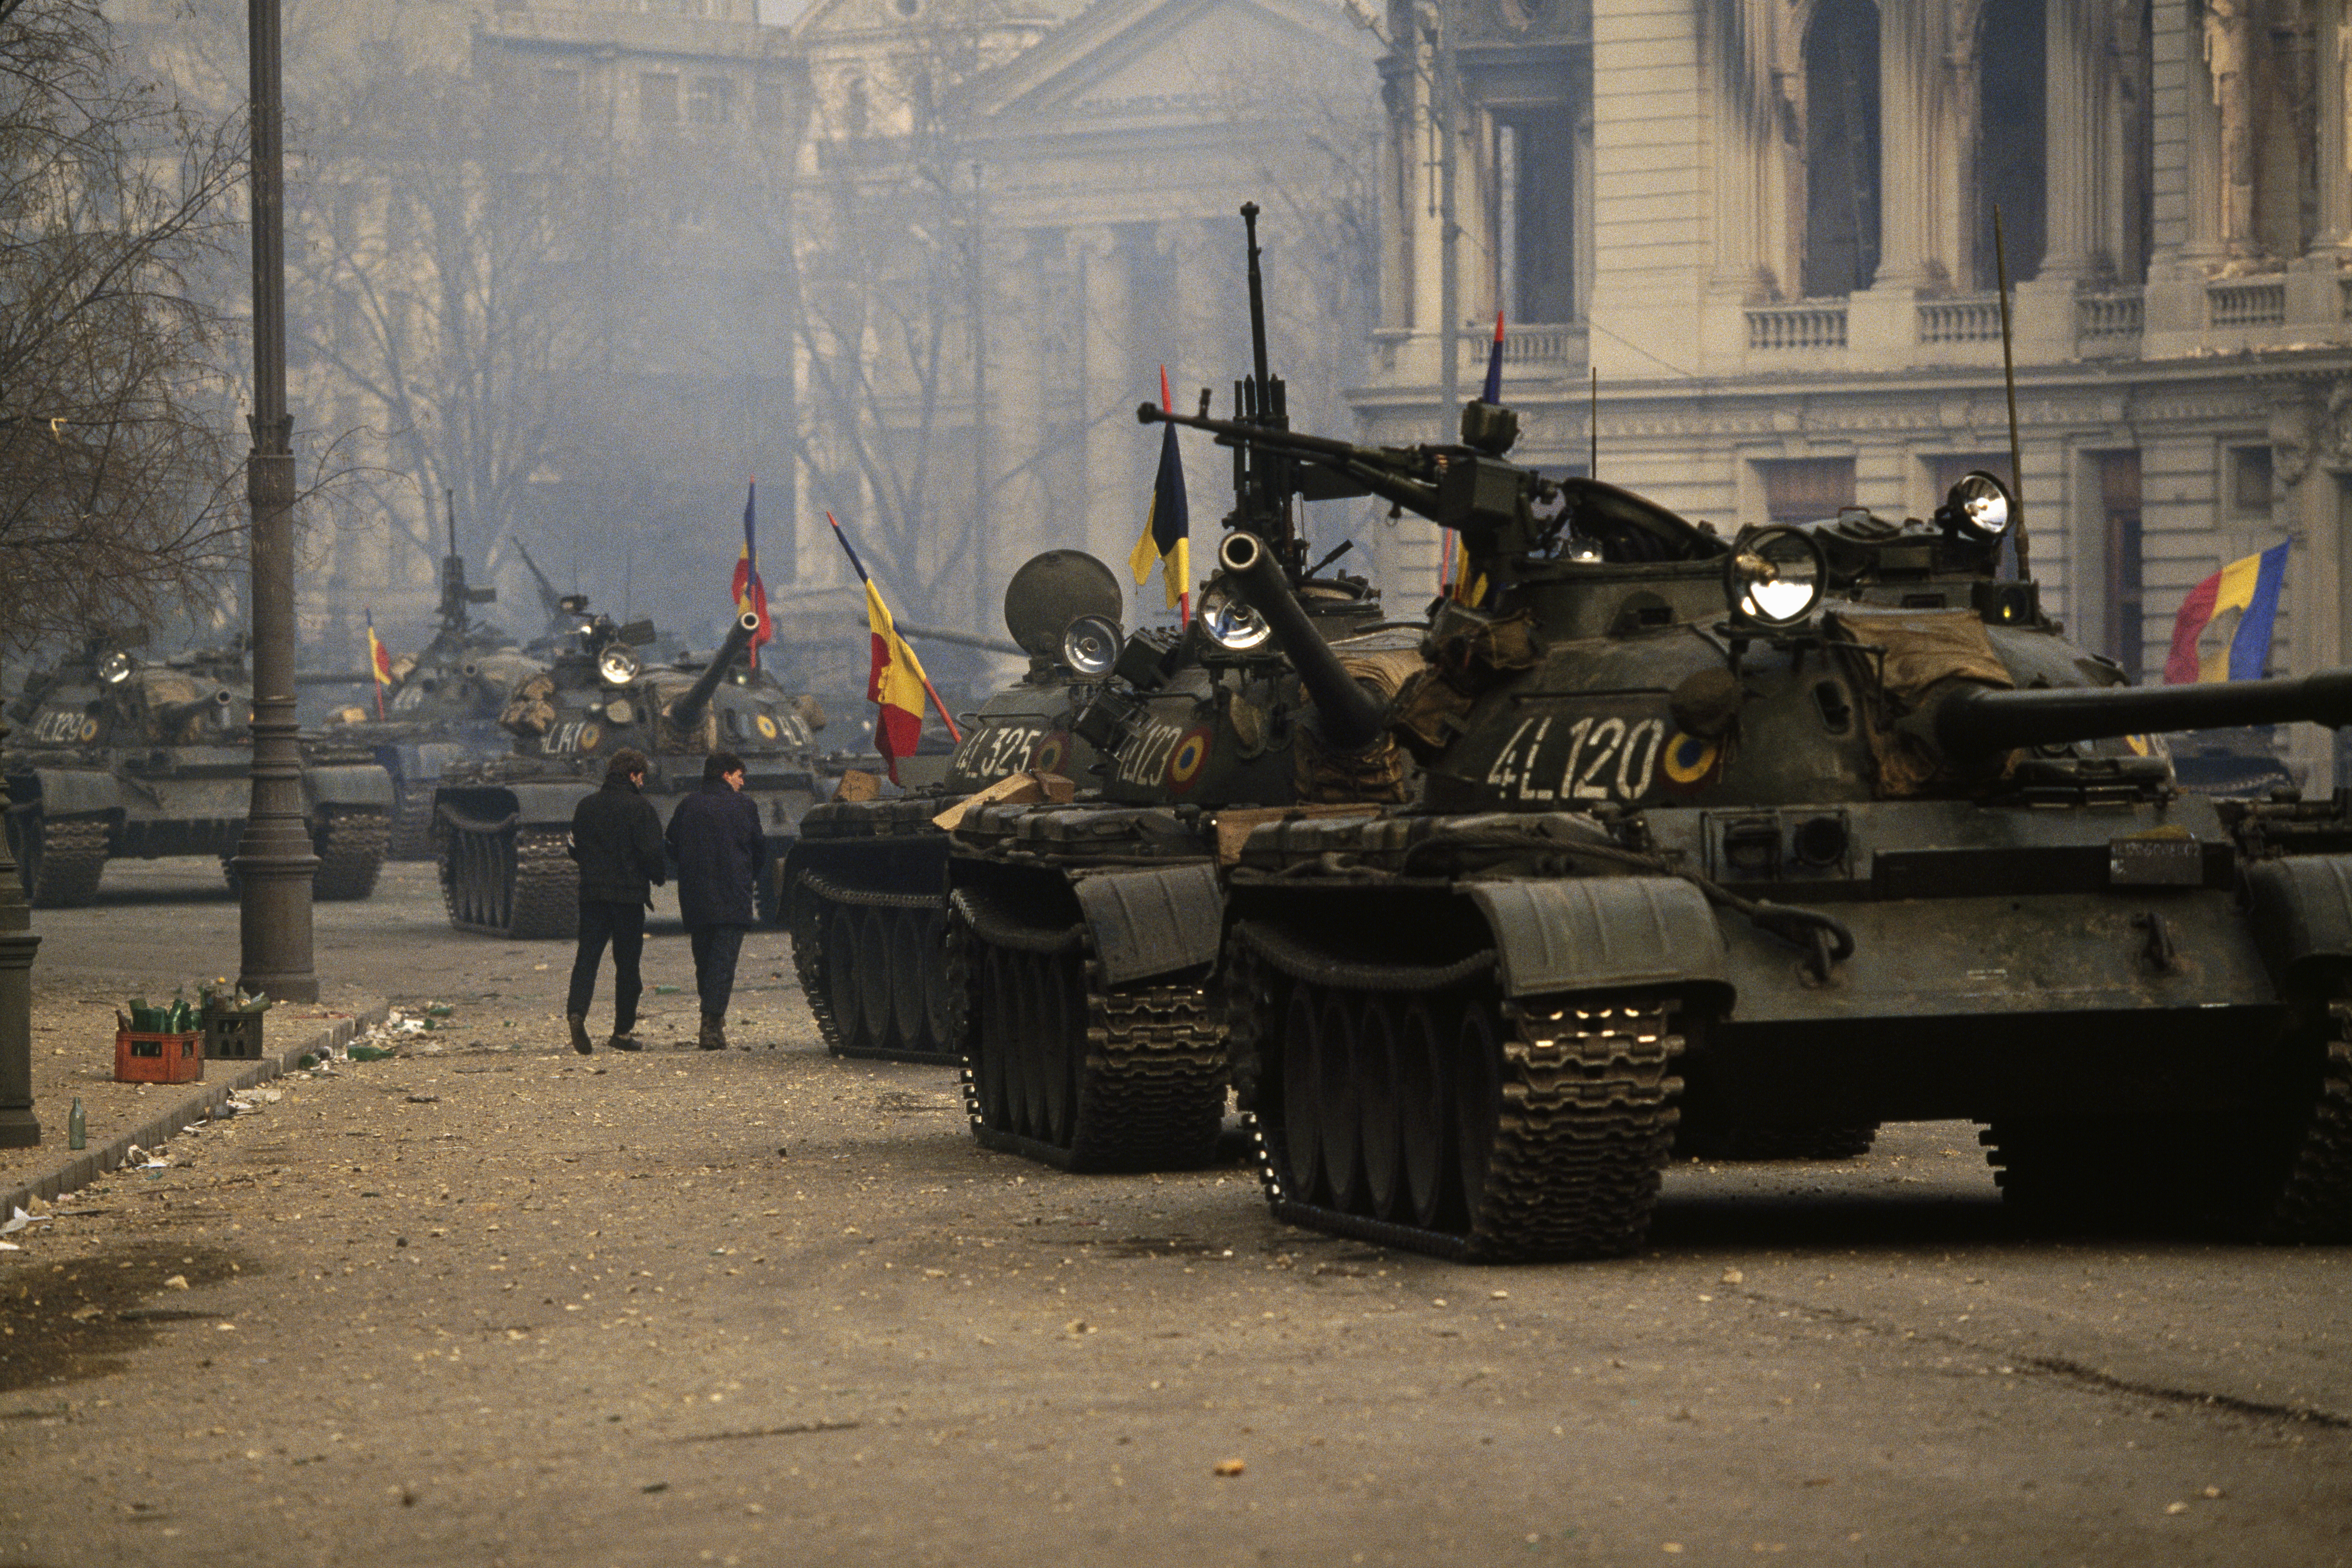 Tanques en las calles de Bucarest el 17 de diciembre de 1989. Ceacescu ordenó a sus tropas disparar contra su pueblo. Poco después, el Ejército lo abandonó y ese fue el fin del dictador (Patrick Durand/Sygma via Getty Images)